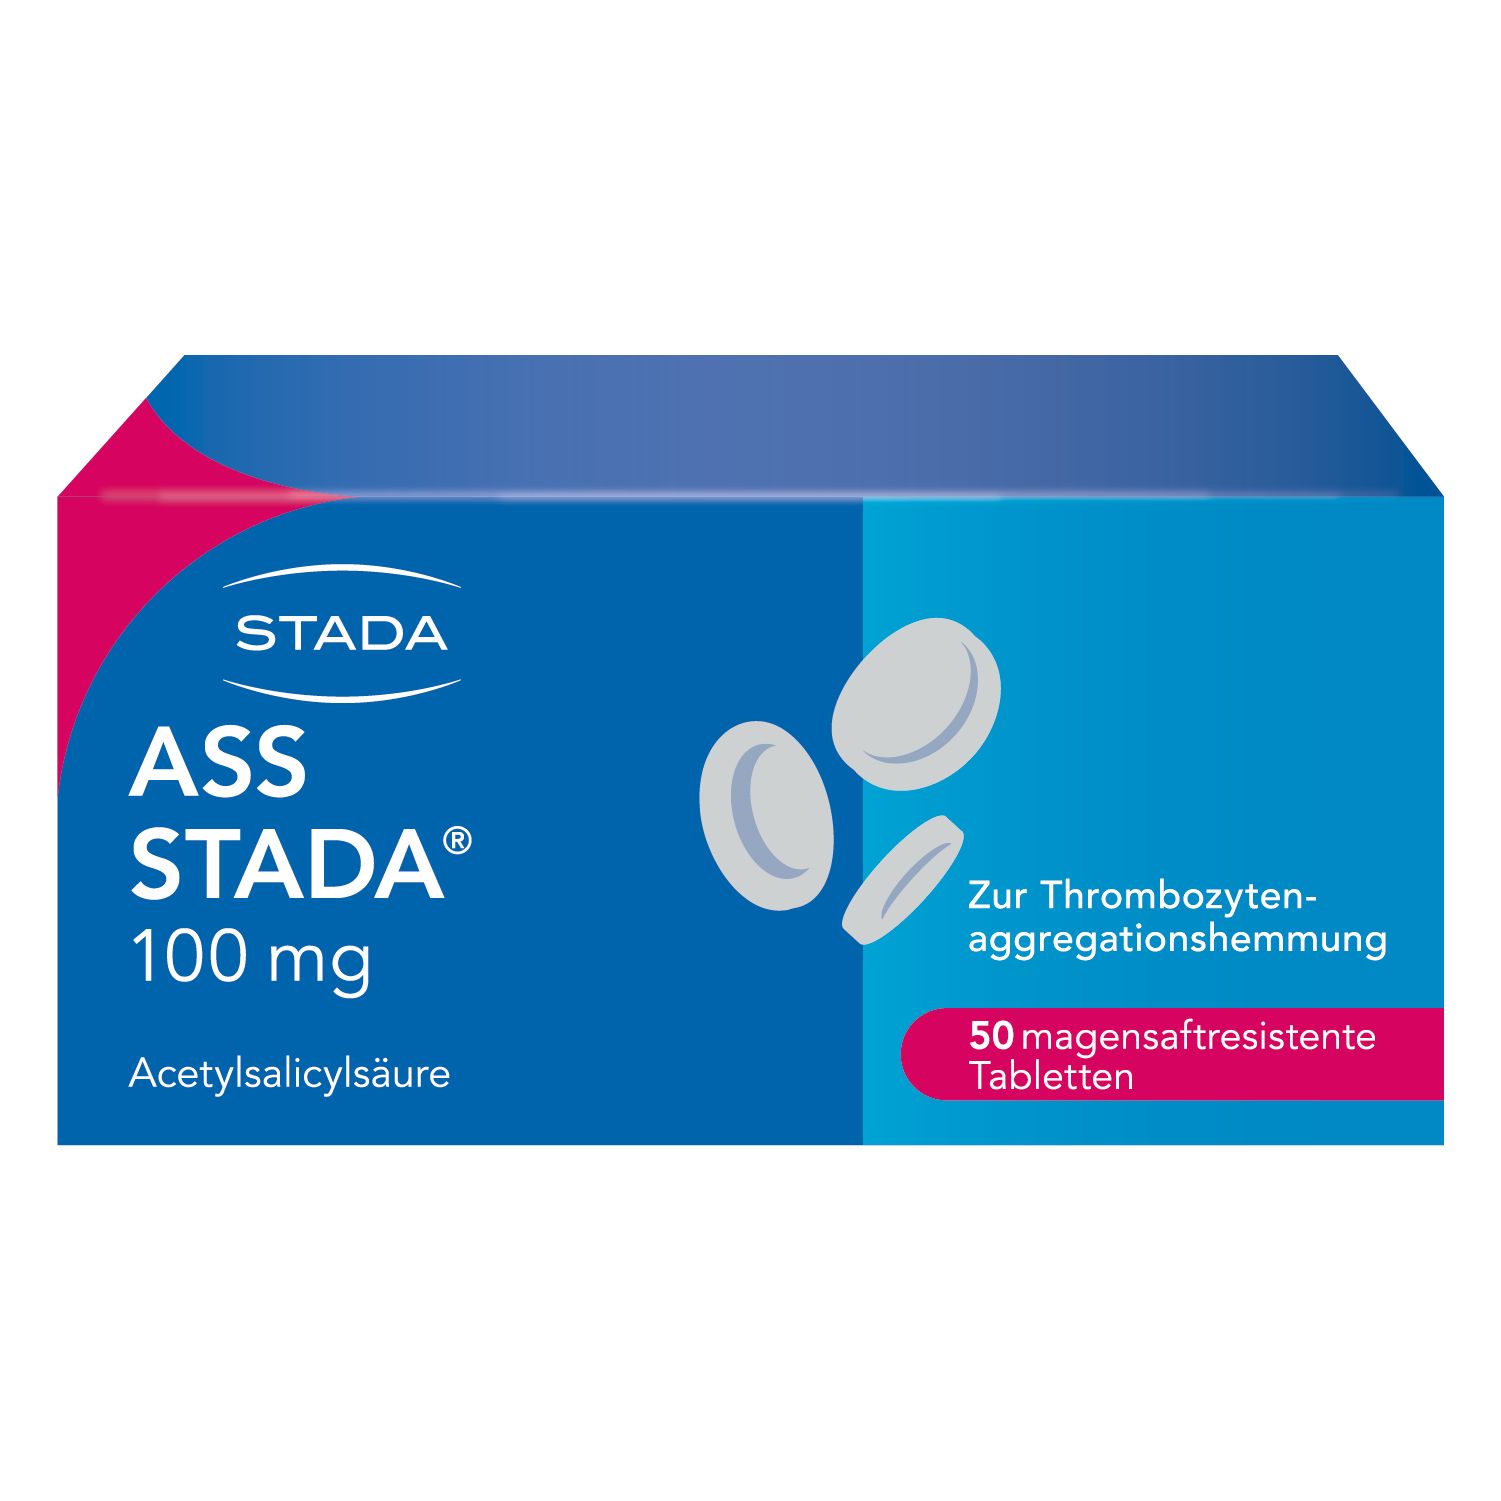 ASS STADA® 100 mg magensaftresistente Tabletten zur Vorbeugung von Herzinfarkt und Schlaganfall bei vorbelasteten Patienten magenfreundliche Formulierung